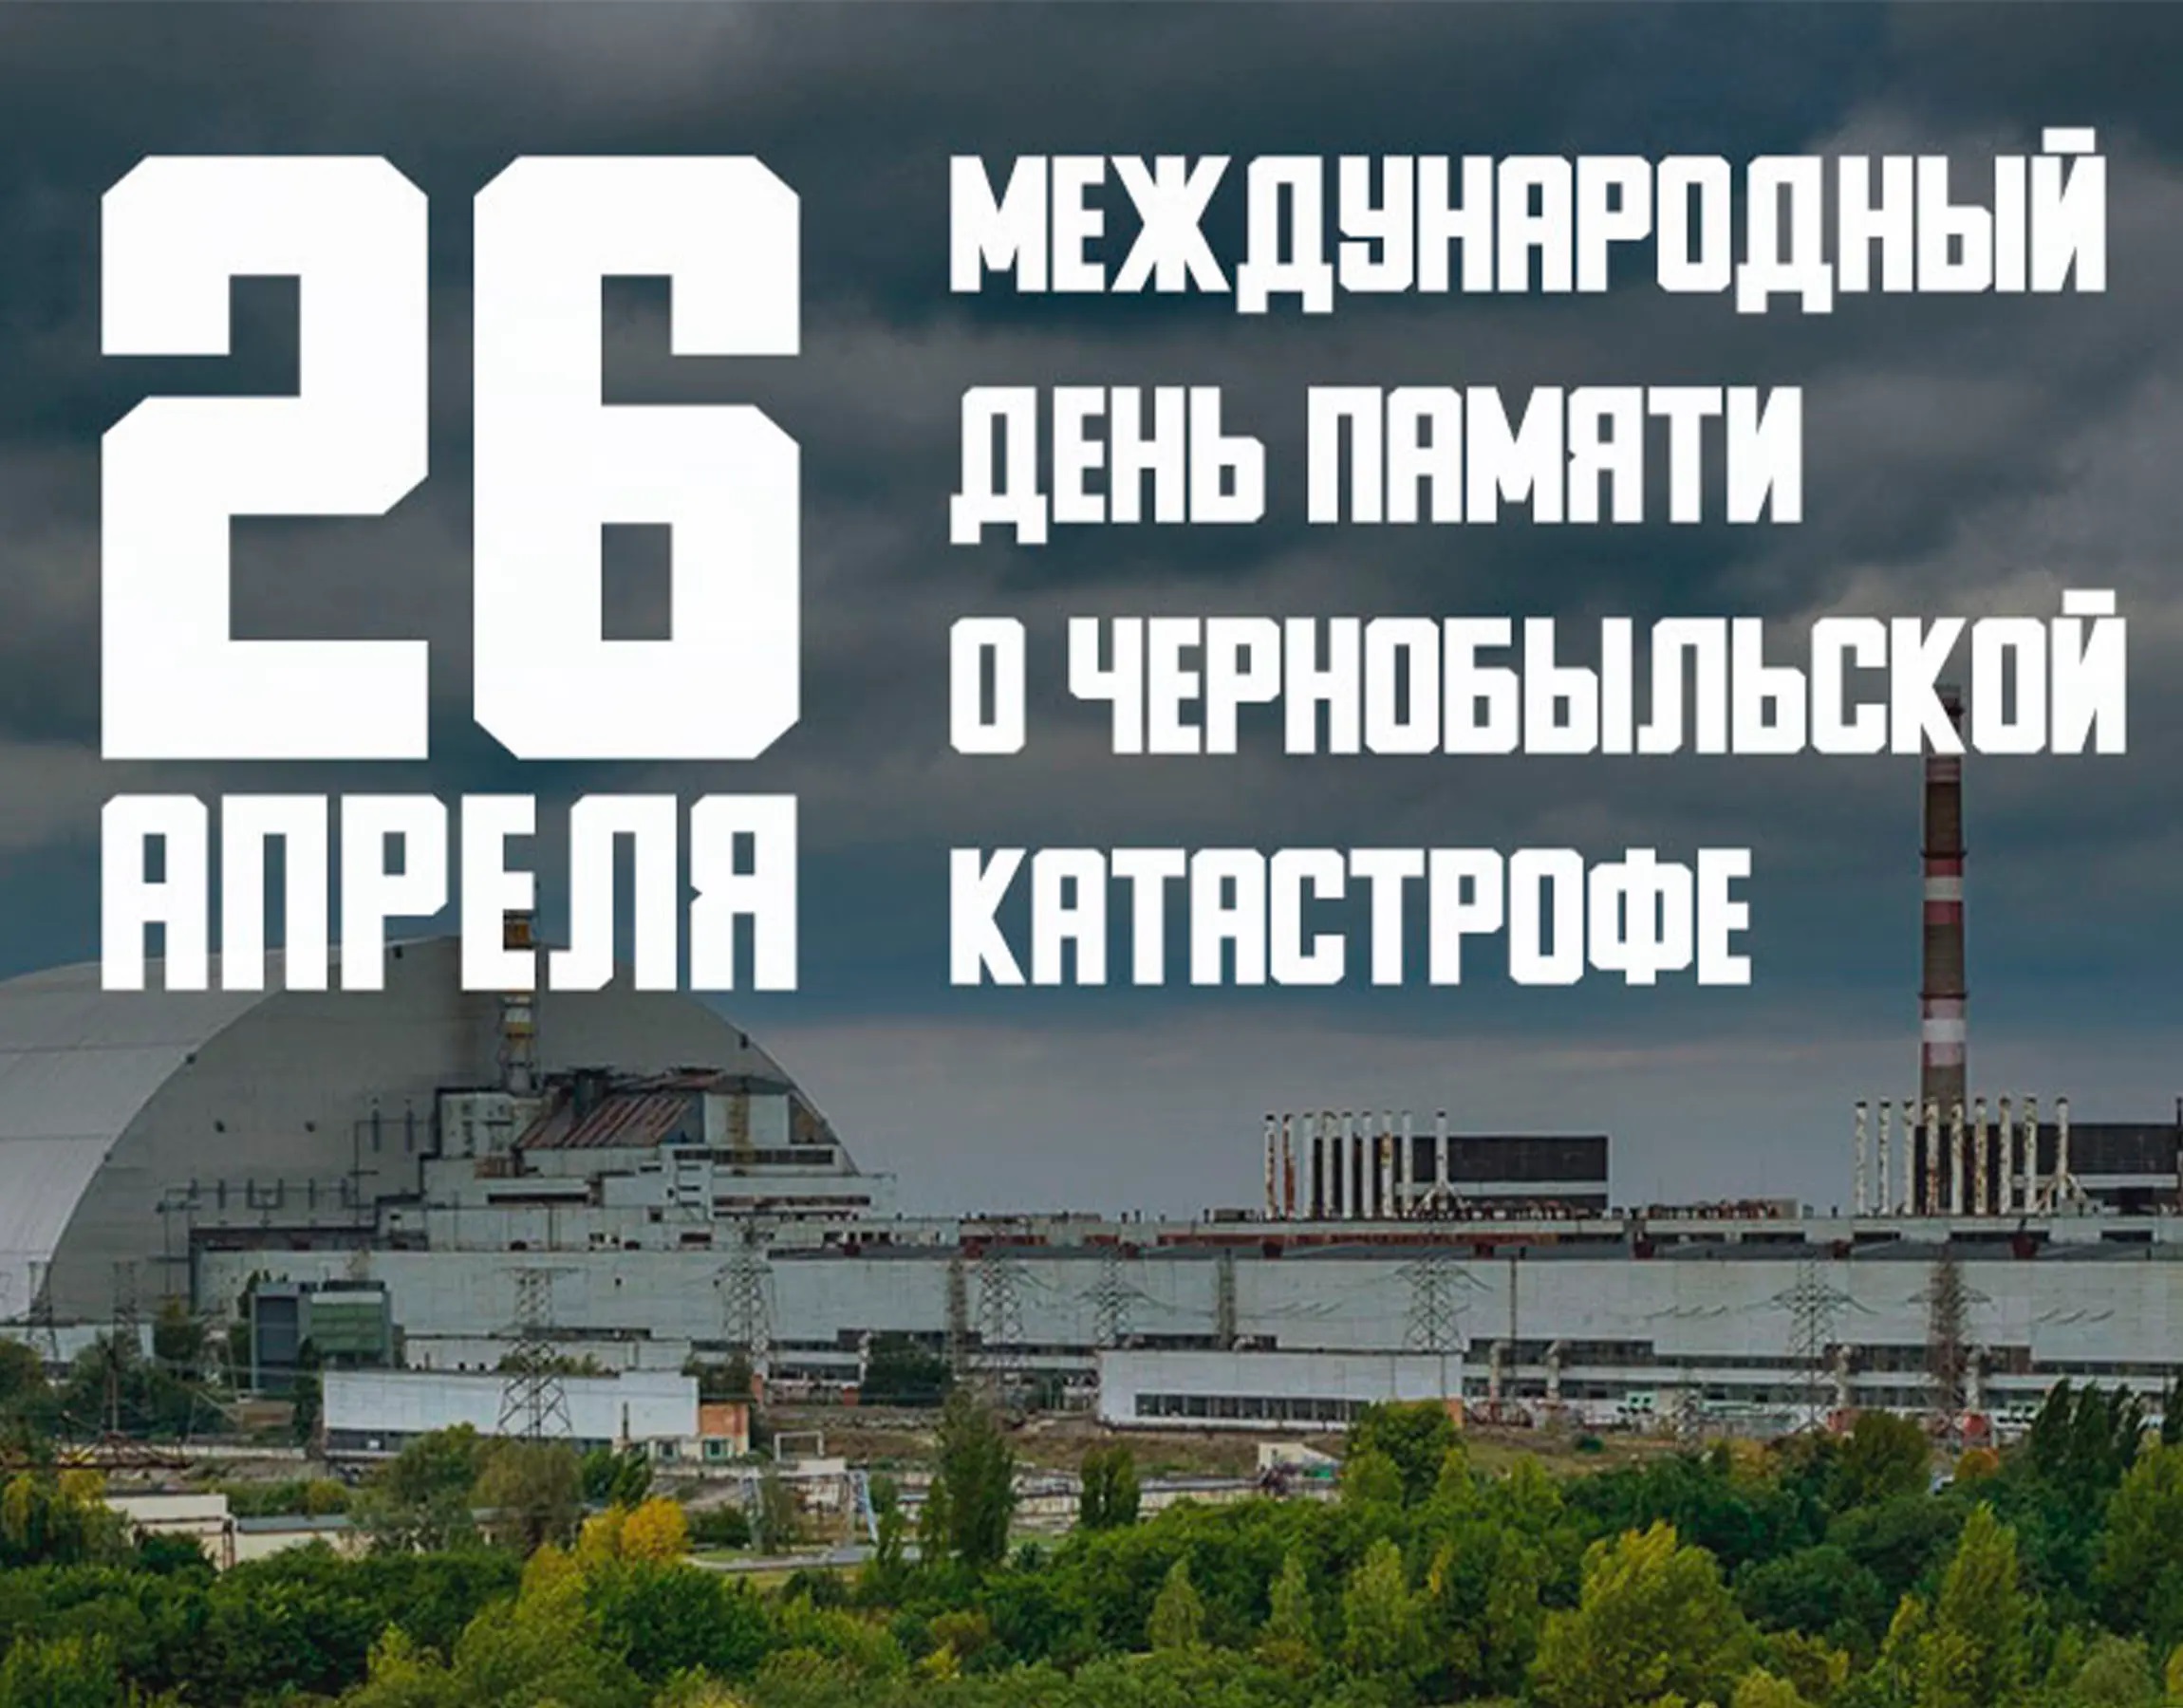 Международный день памяти о чернобыльской катастро